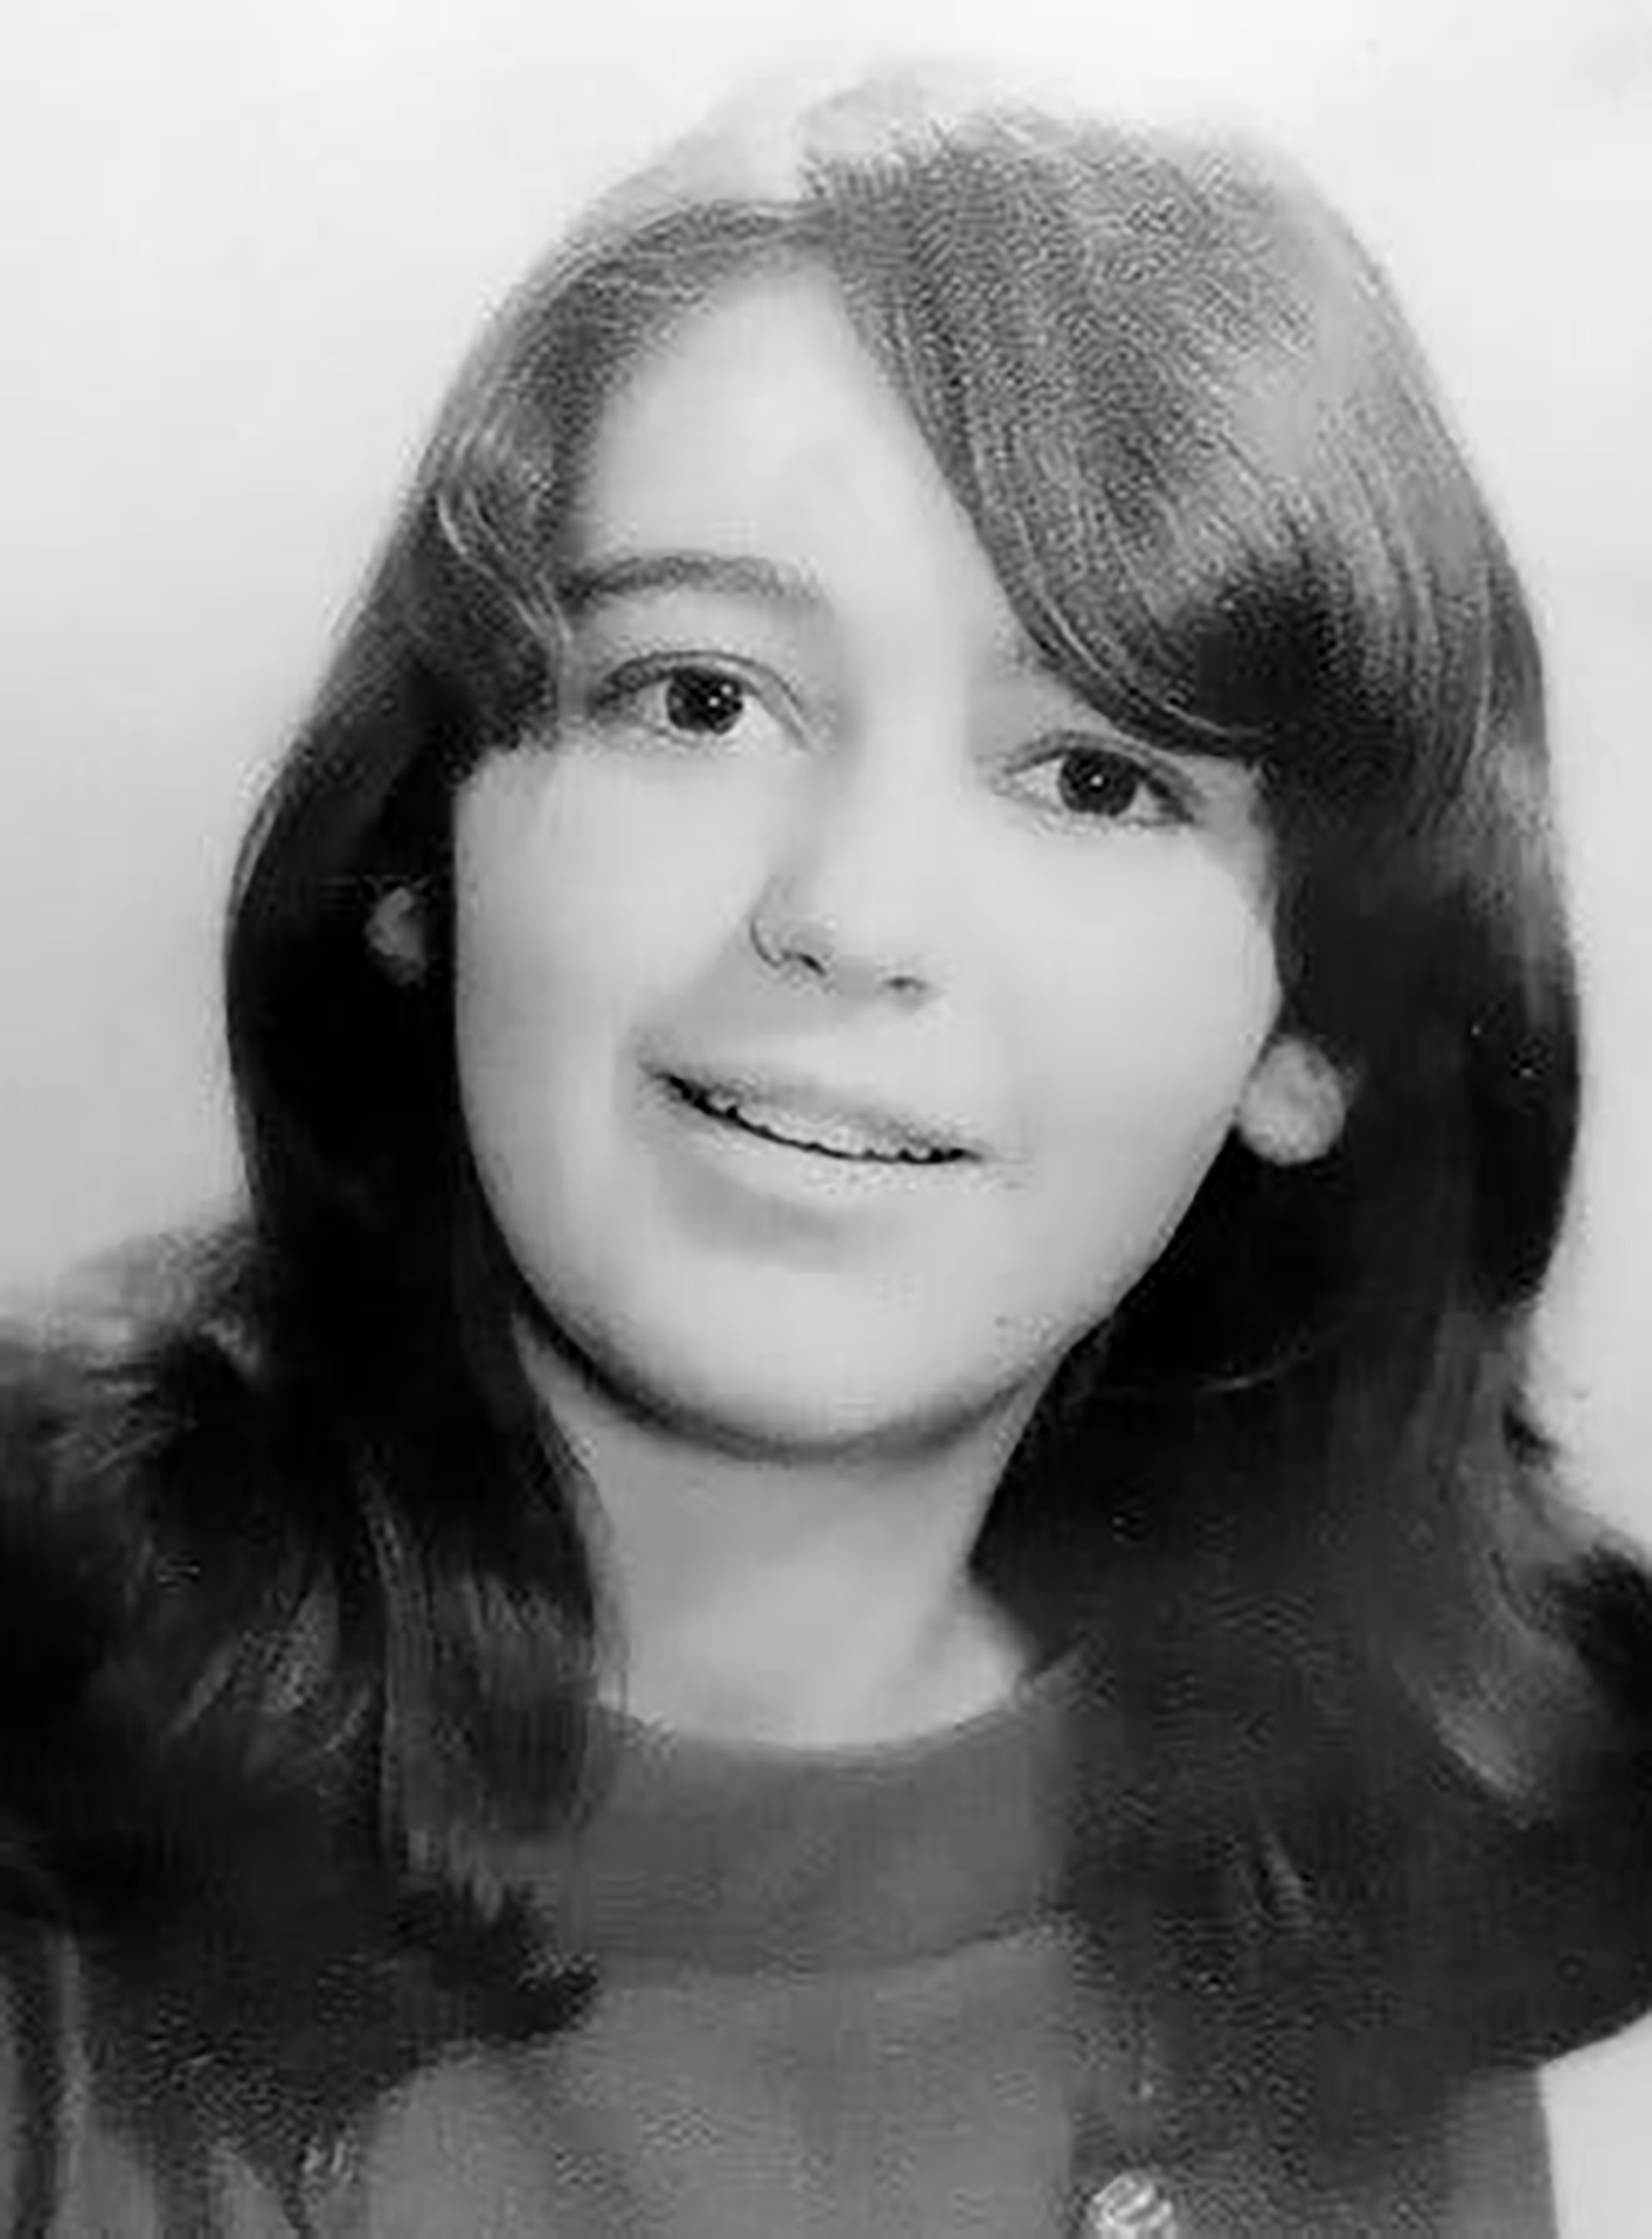 En abril de 1969, mató a Irene Blase, de dieciocho años: la estranguló con un alambre y arrojó su cuerpo al río Saddle